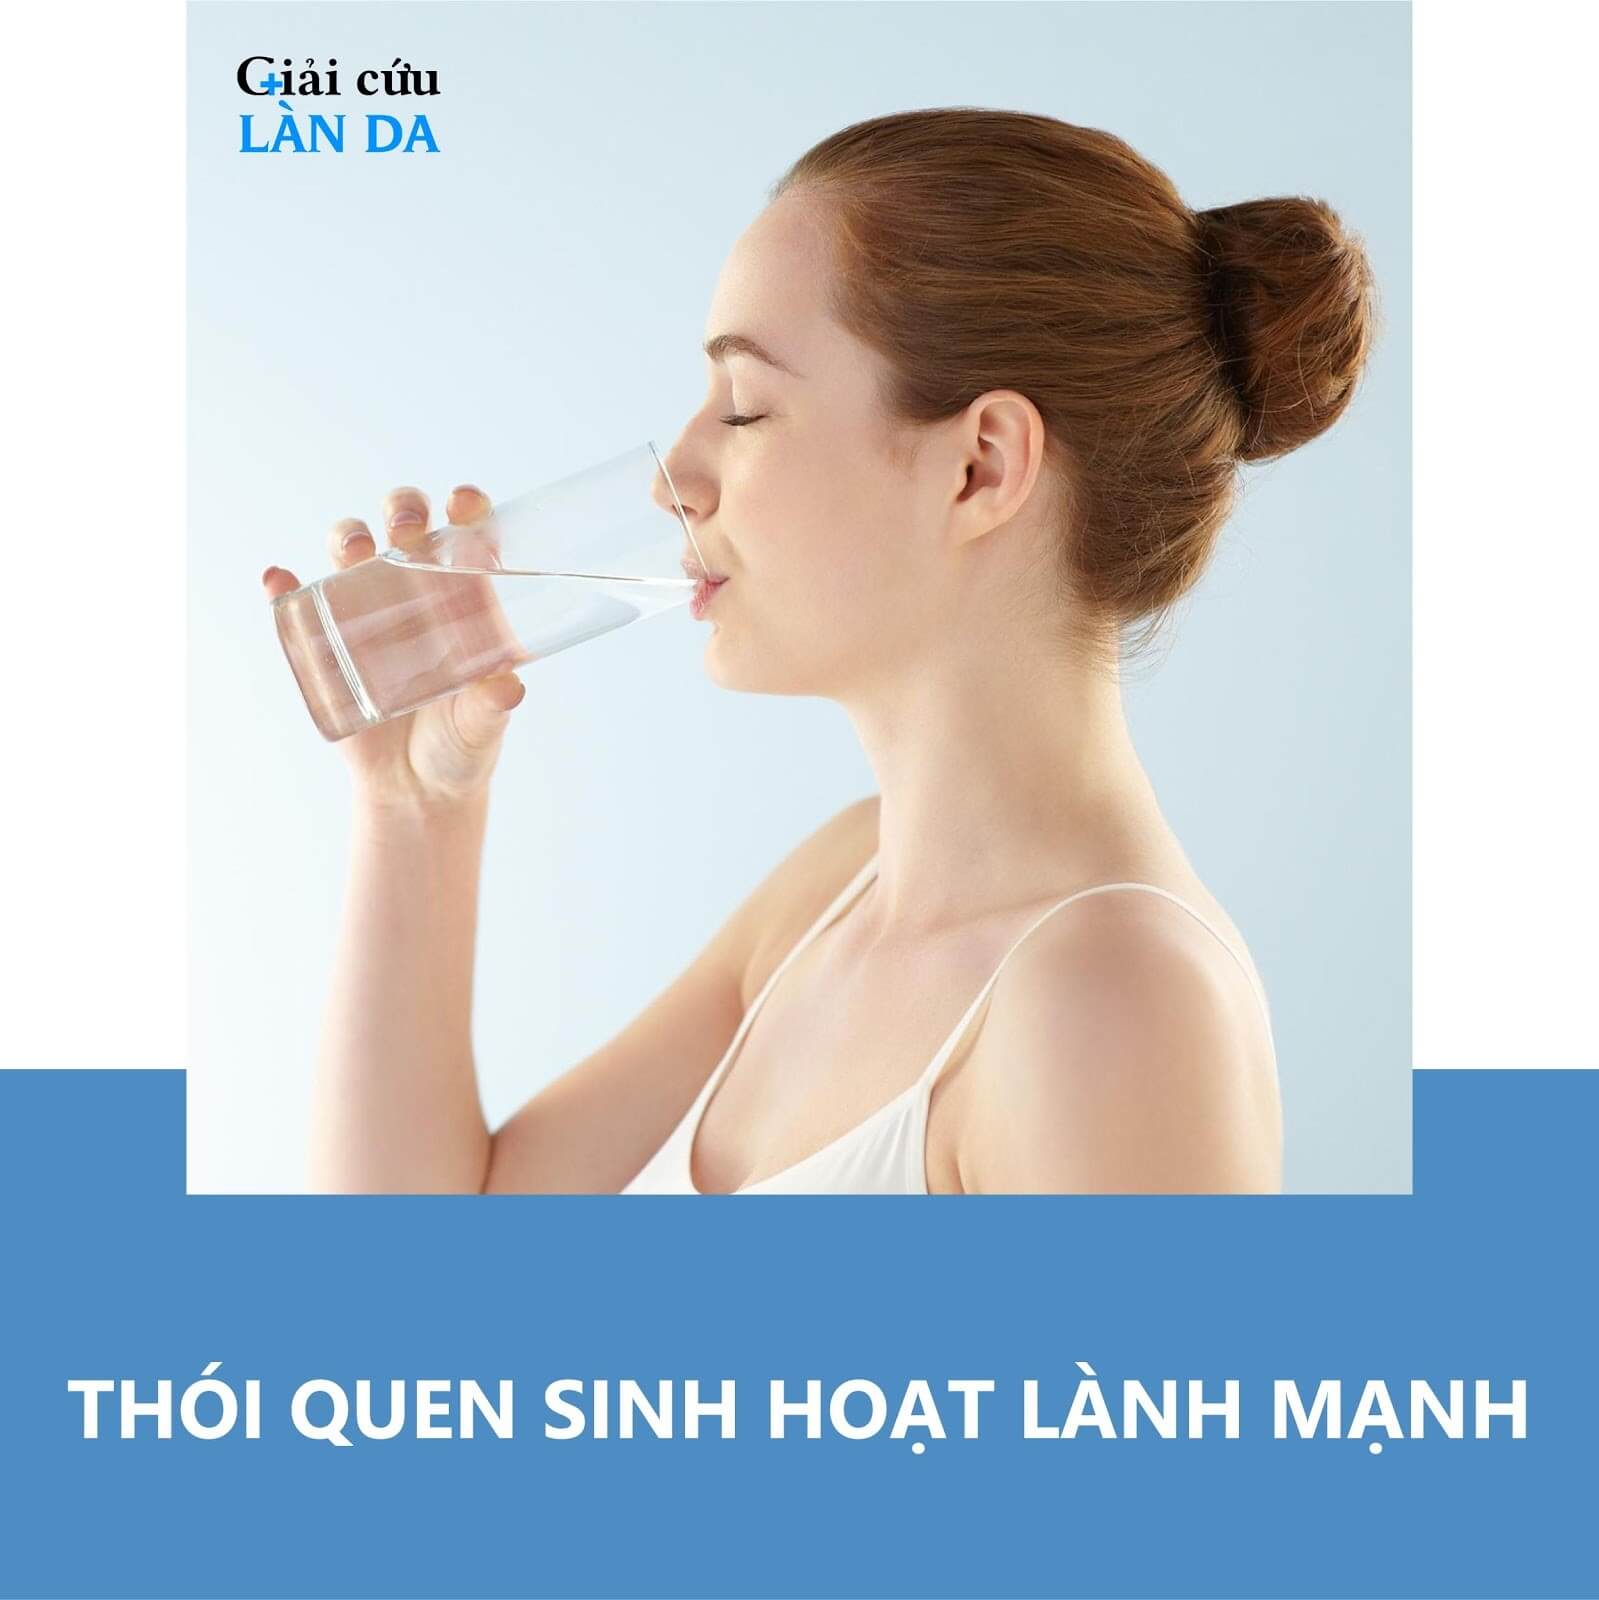 Uống nước để trị mụn cám hiệu quả và ngăn ngừa mụn tái phát